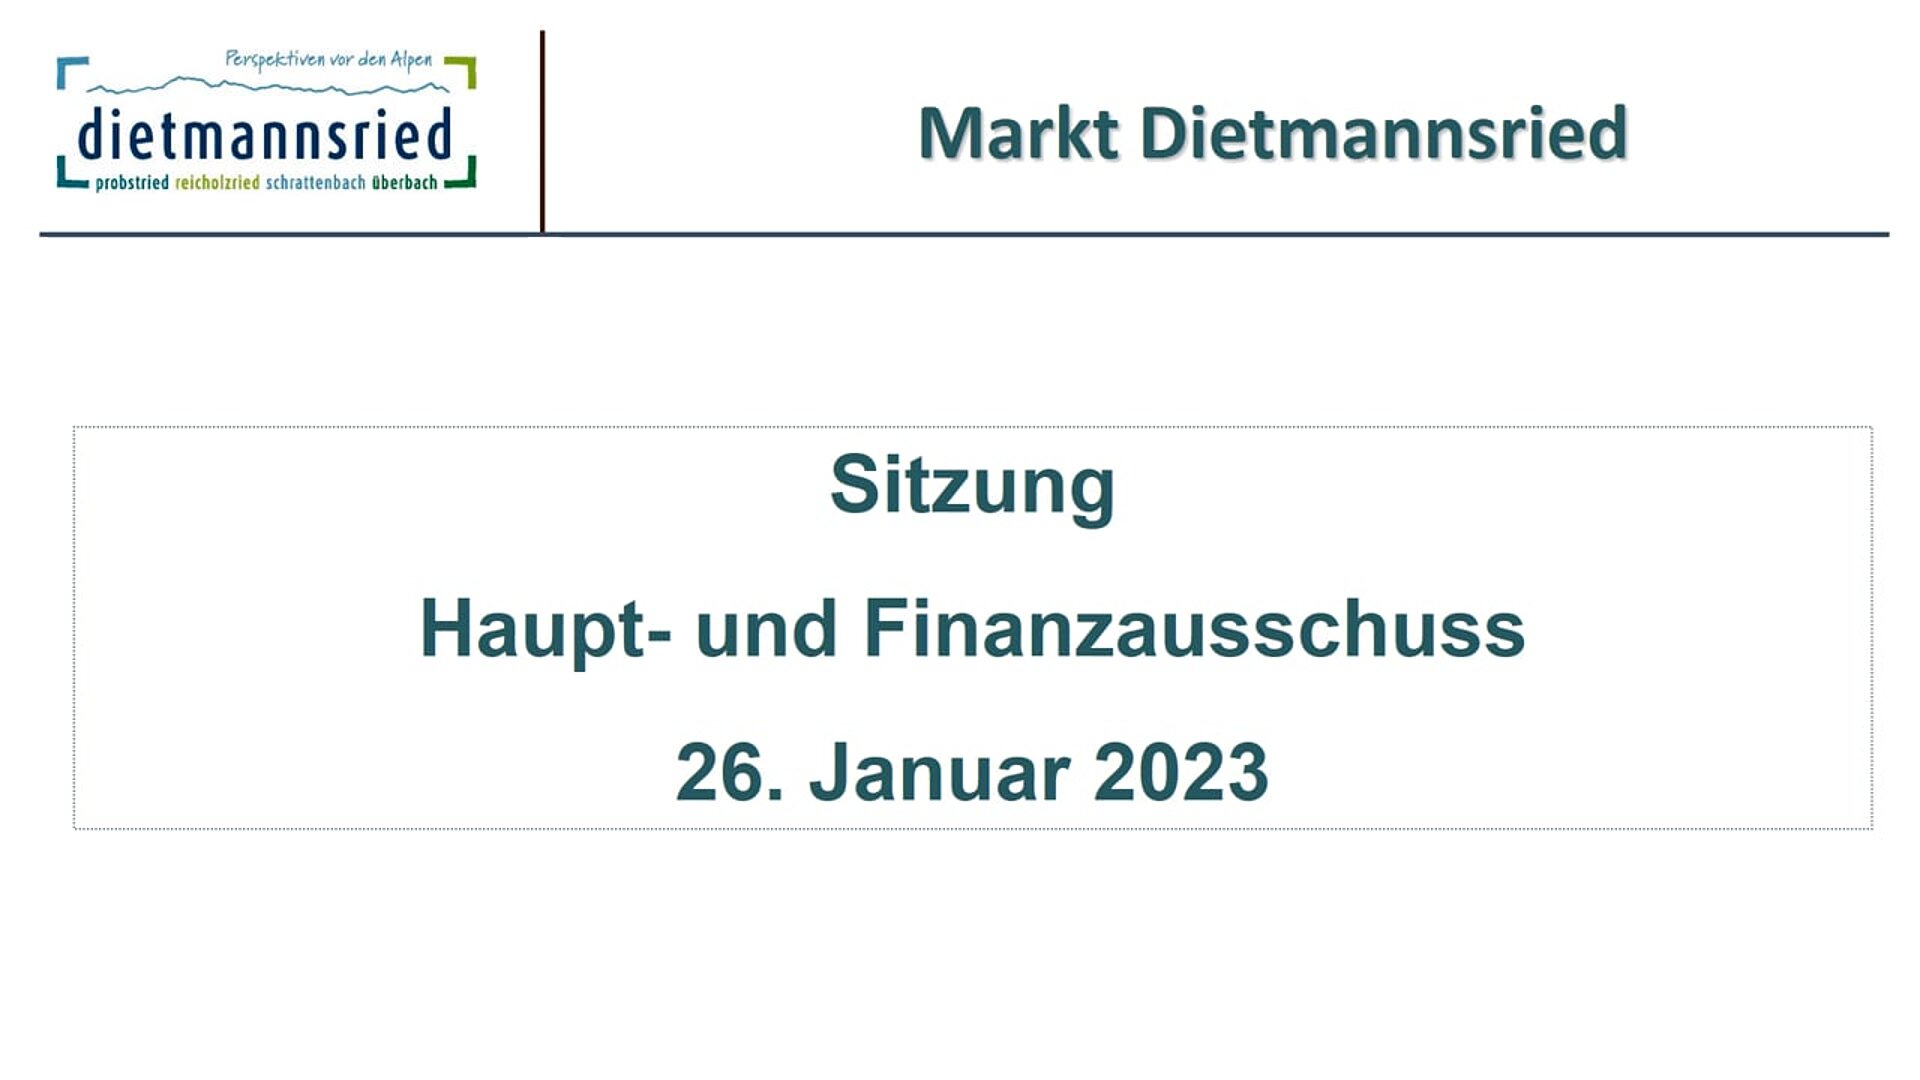 Sitzung Haupt- und Finanzausschuss v. 26.01.2023